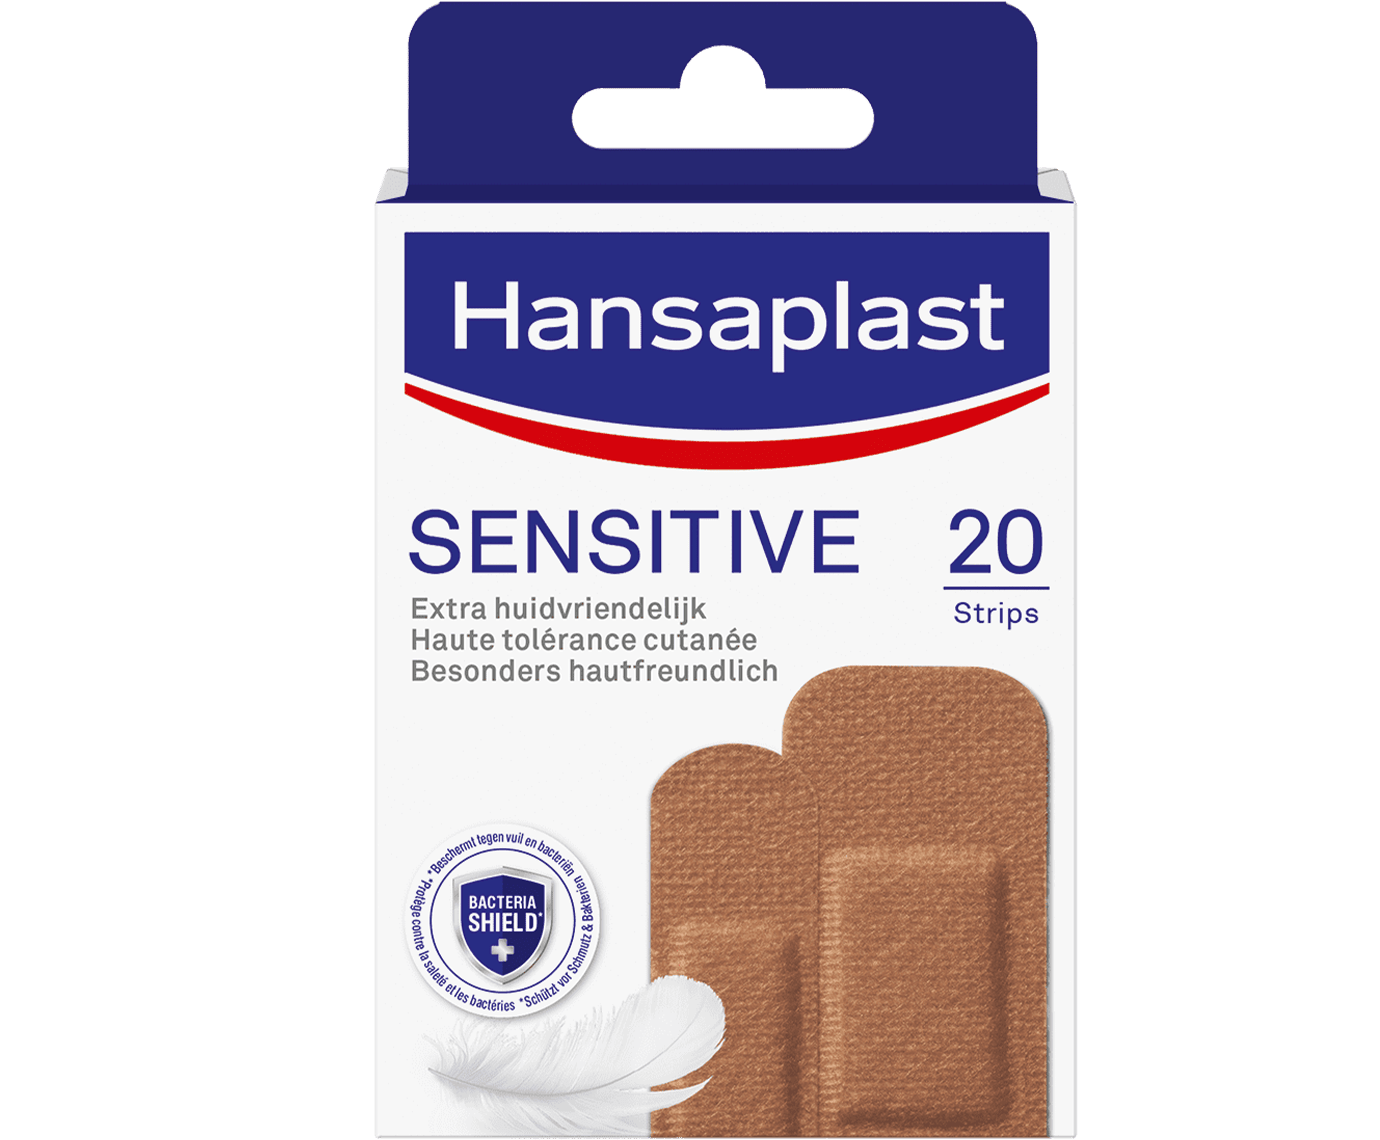 Sensitive Pleisters Dark & | Hansaplast